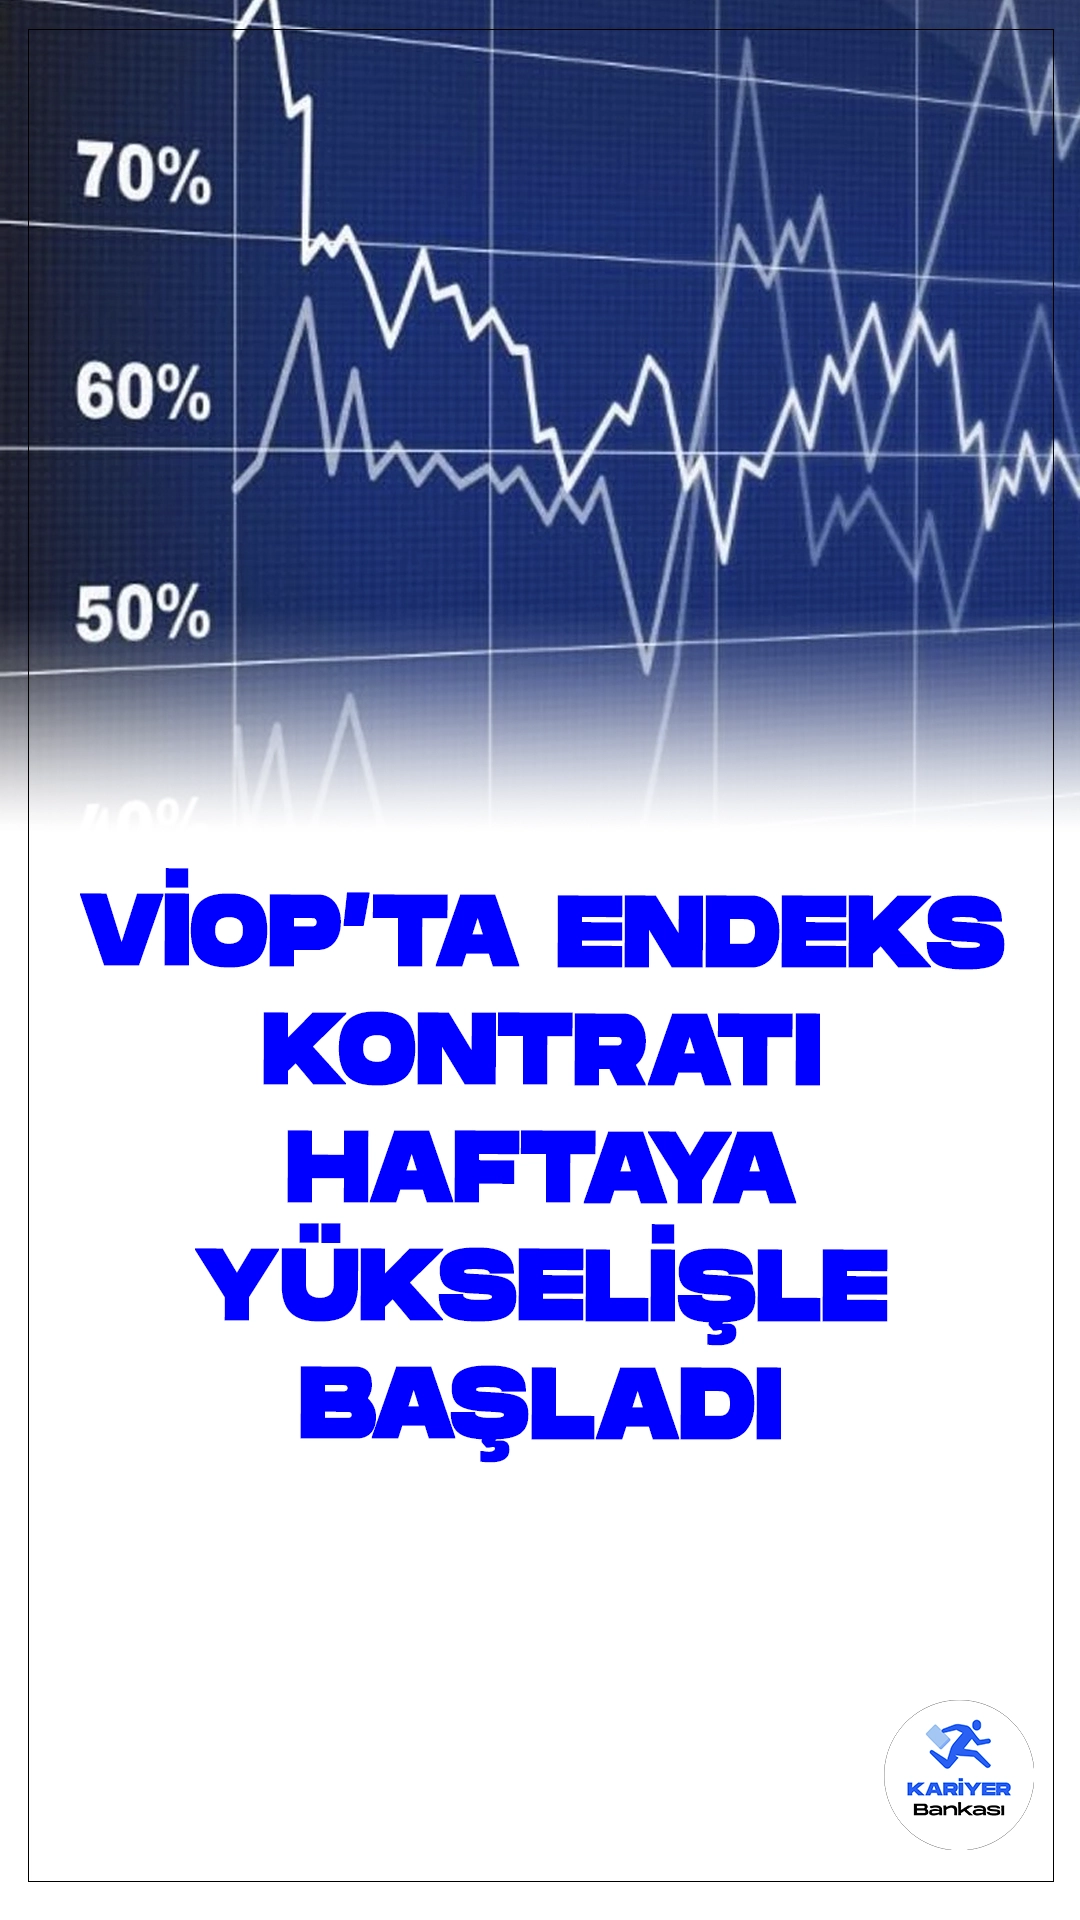 VİOP'ta Endeks Kontratı Haftaya Yükselişle Başladı.Borsa İstanbul Vadeli İşlem ve Opsiyon Piyasası'nda (VİOP), ağustos vadeli BIST 30 endeksine dayalı kontrat, haftaya yüzde 0,1 yükselişle 12.439,25 puandan başladı.